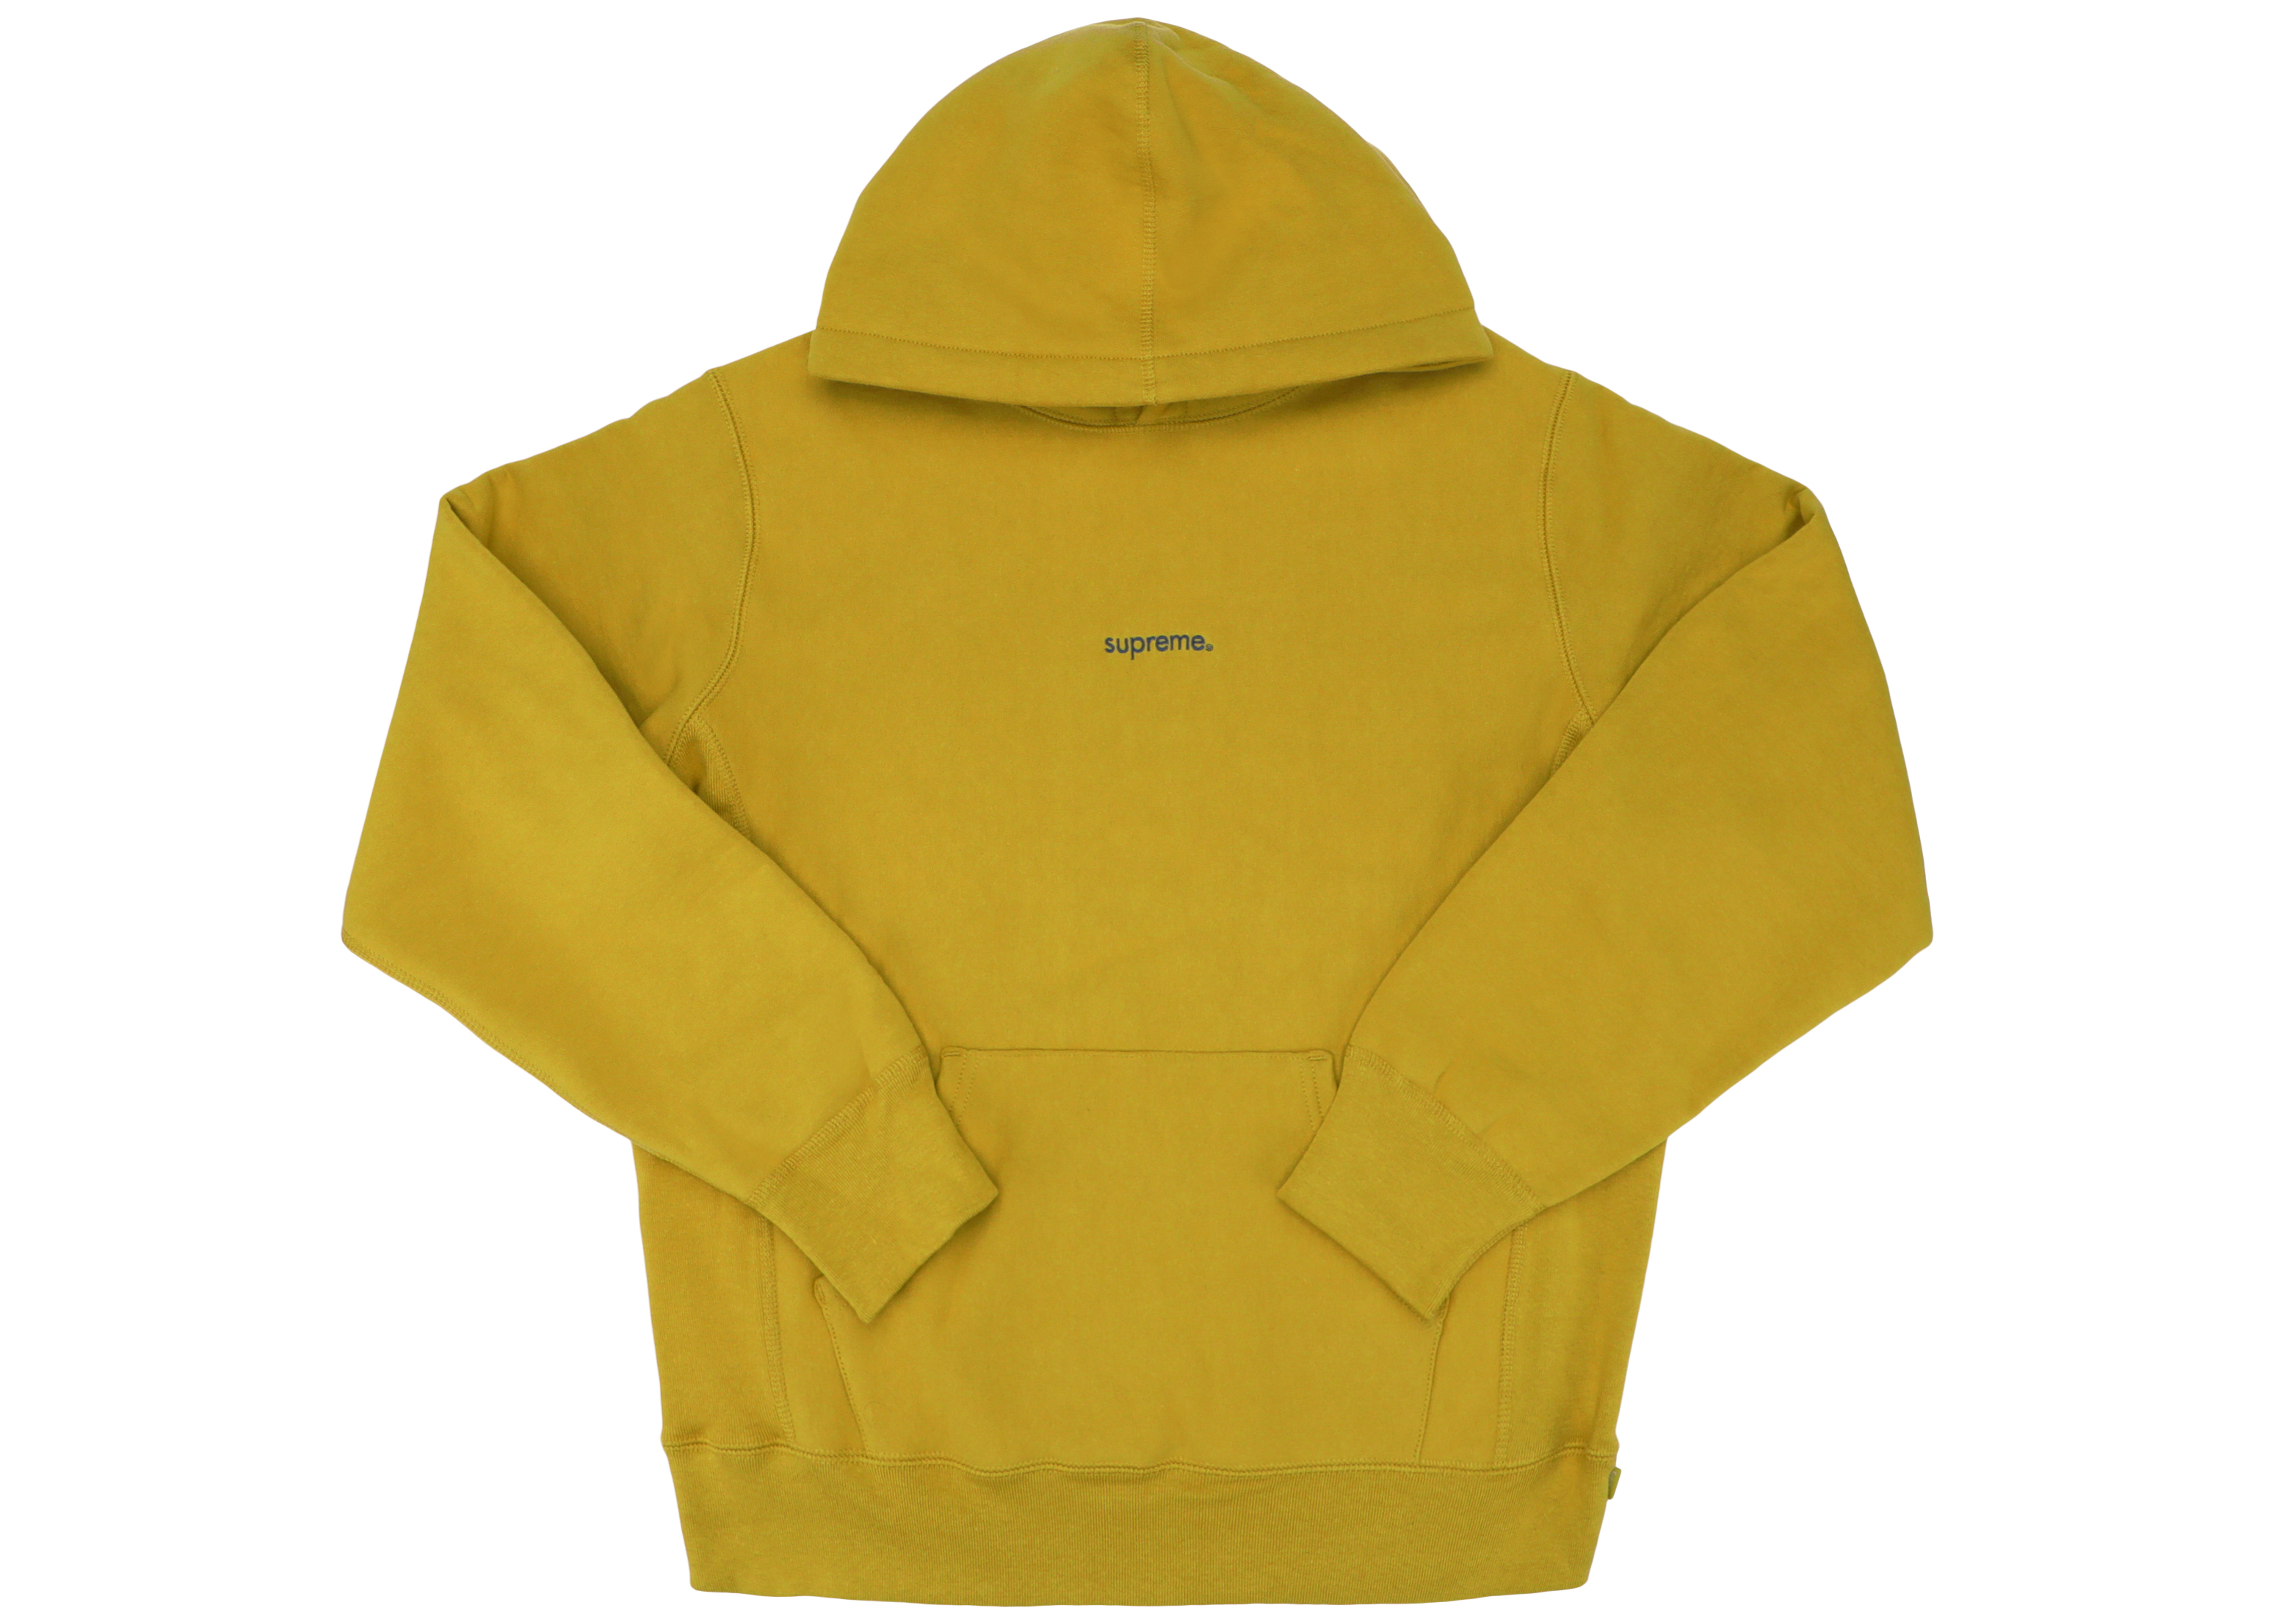 trademark hooded sweatshirt